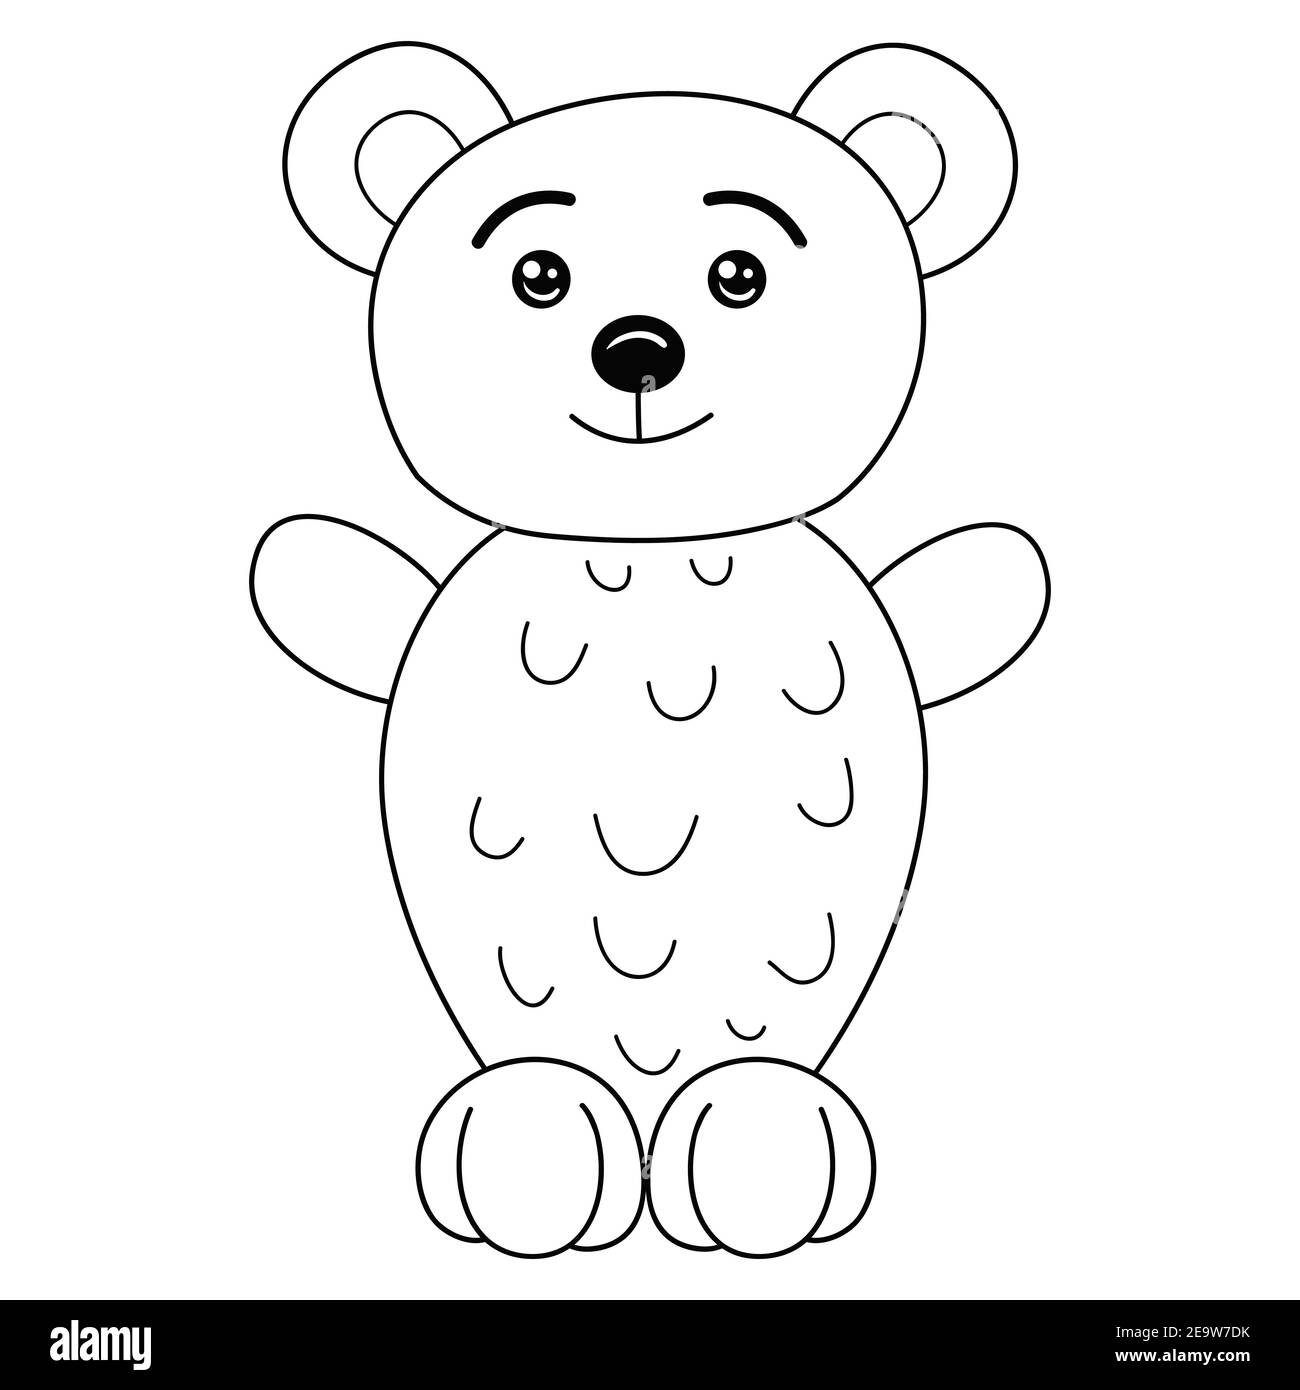 Una bonita imagen de oso de dibujos animados para la actividad relajantelãnea ilustraciãn de tilo artãstico para imprimir imagen vector de stock